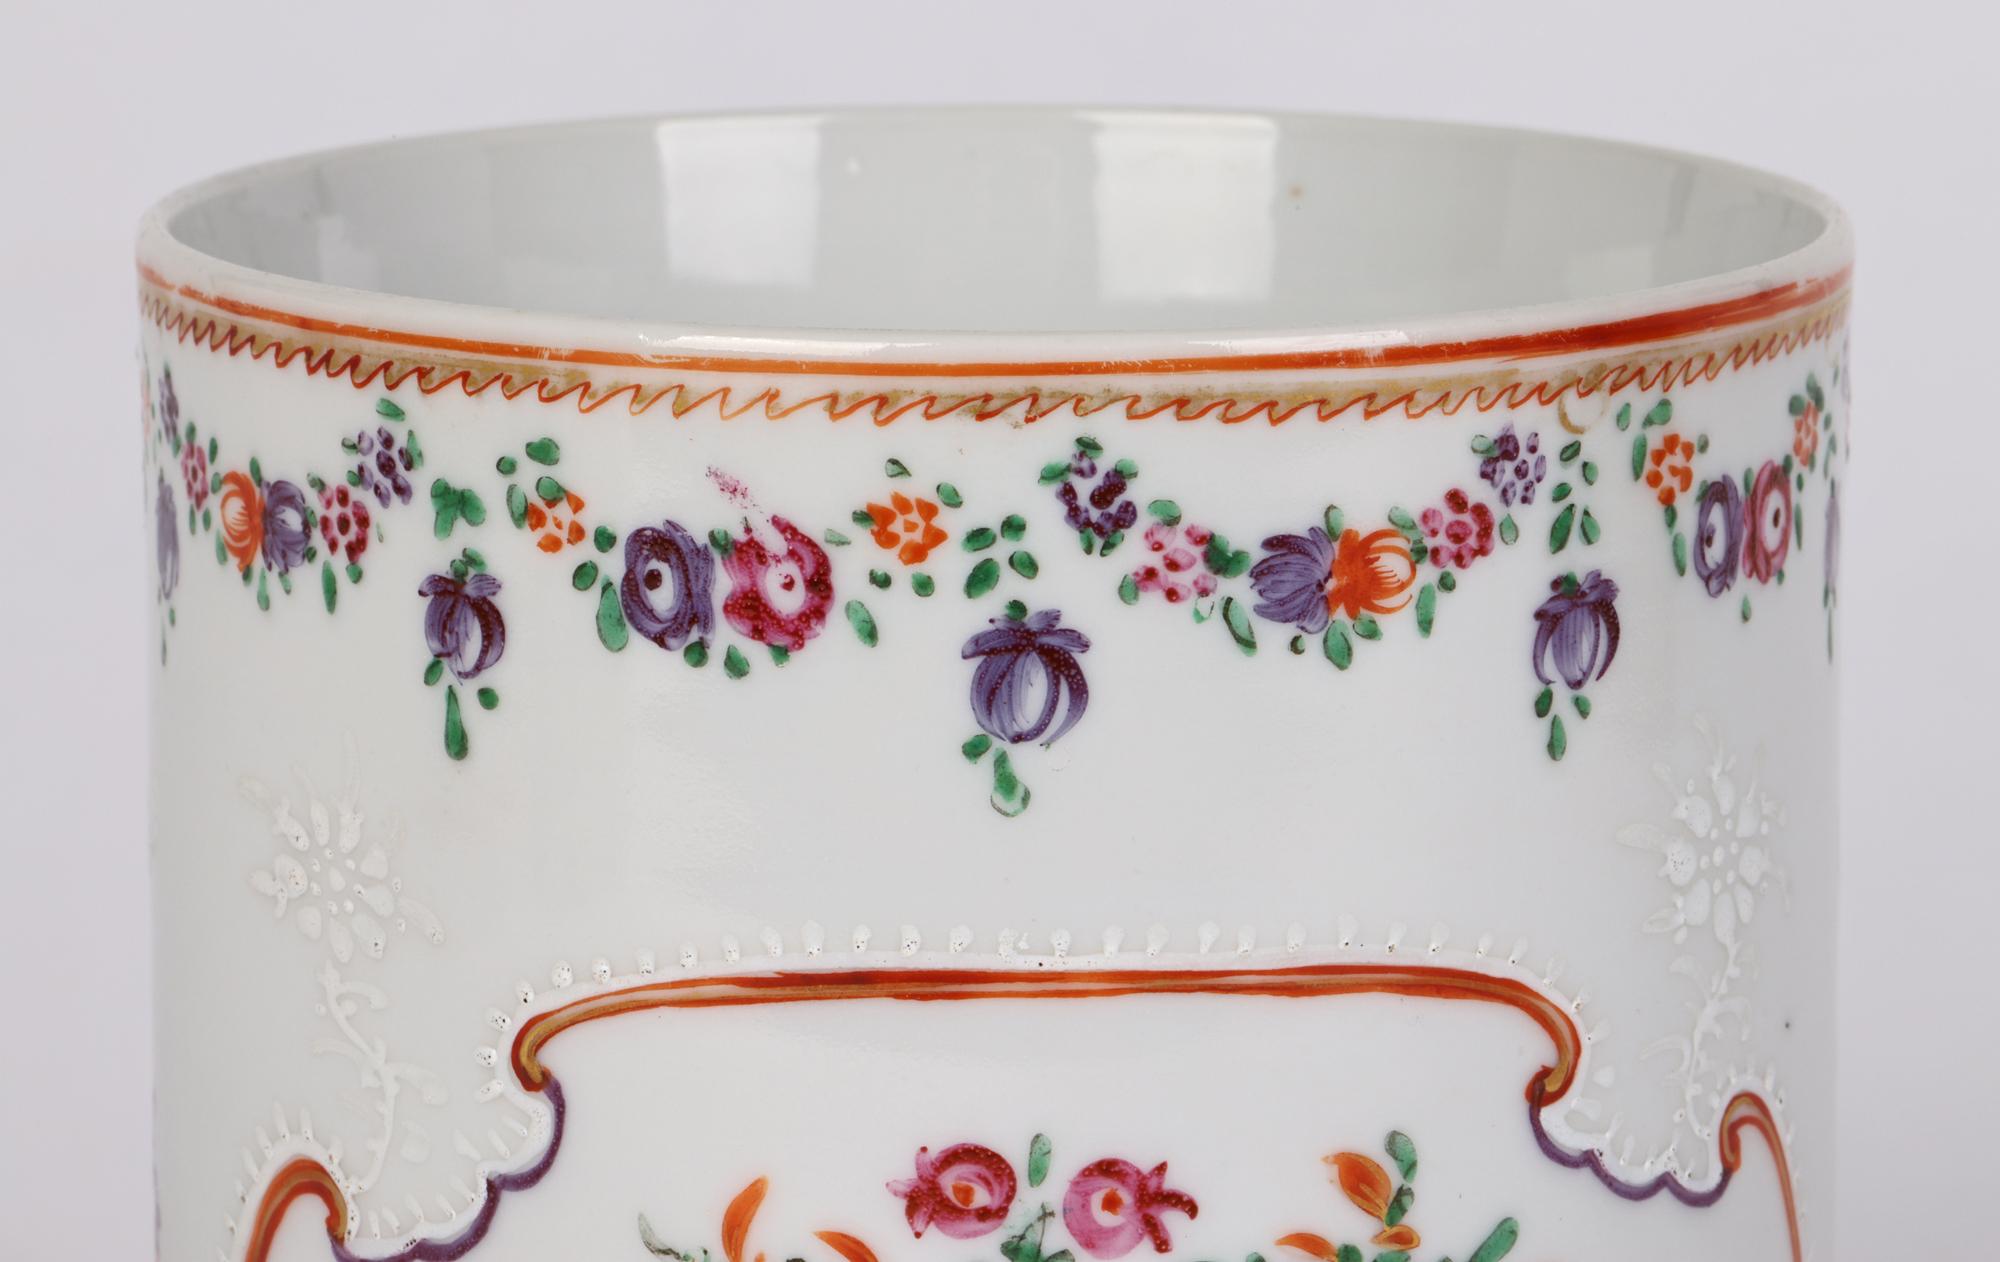 Une très belle tasse cylindrique en porcelaine de Chine Qing peinte à la main avec des motifs floraux et datant probablement de la fin du 18e siècle ou peut-être même du début du 19e siècle. La tasse a une base plate non émaillée avec un large corps